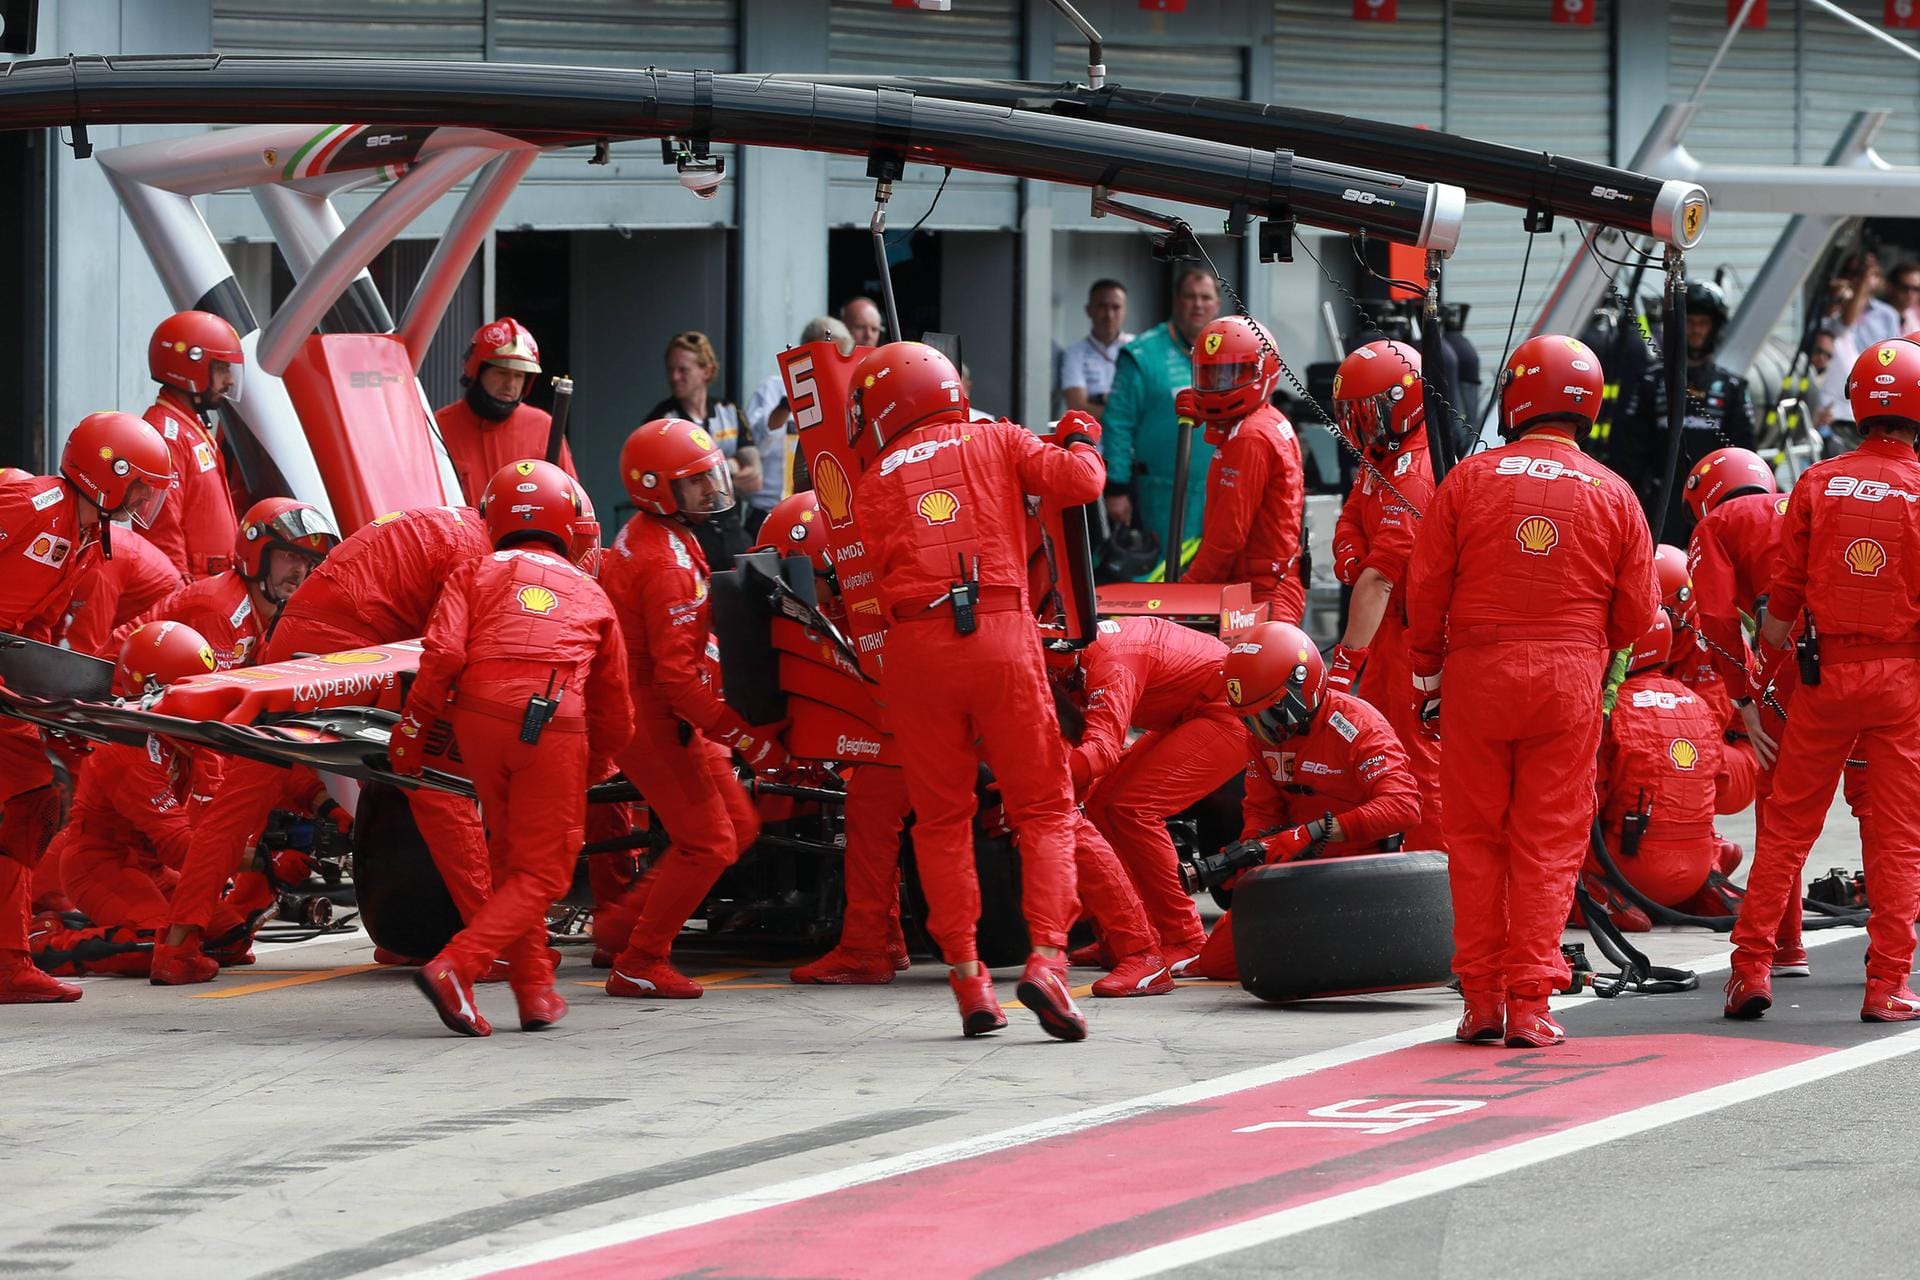 Tuttosport (Italien): "Ferrarissimo! Fans verrückt nach Leclerc, roter Triumph in Monza am Ende eines wahnsinnigen Rennens und eines atemberaubenden Duells mit Hamilton. Vettel stürzt in die Krise."